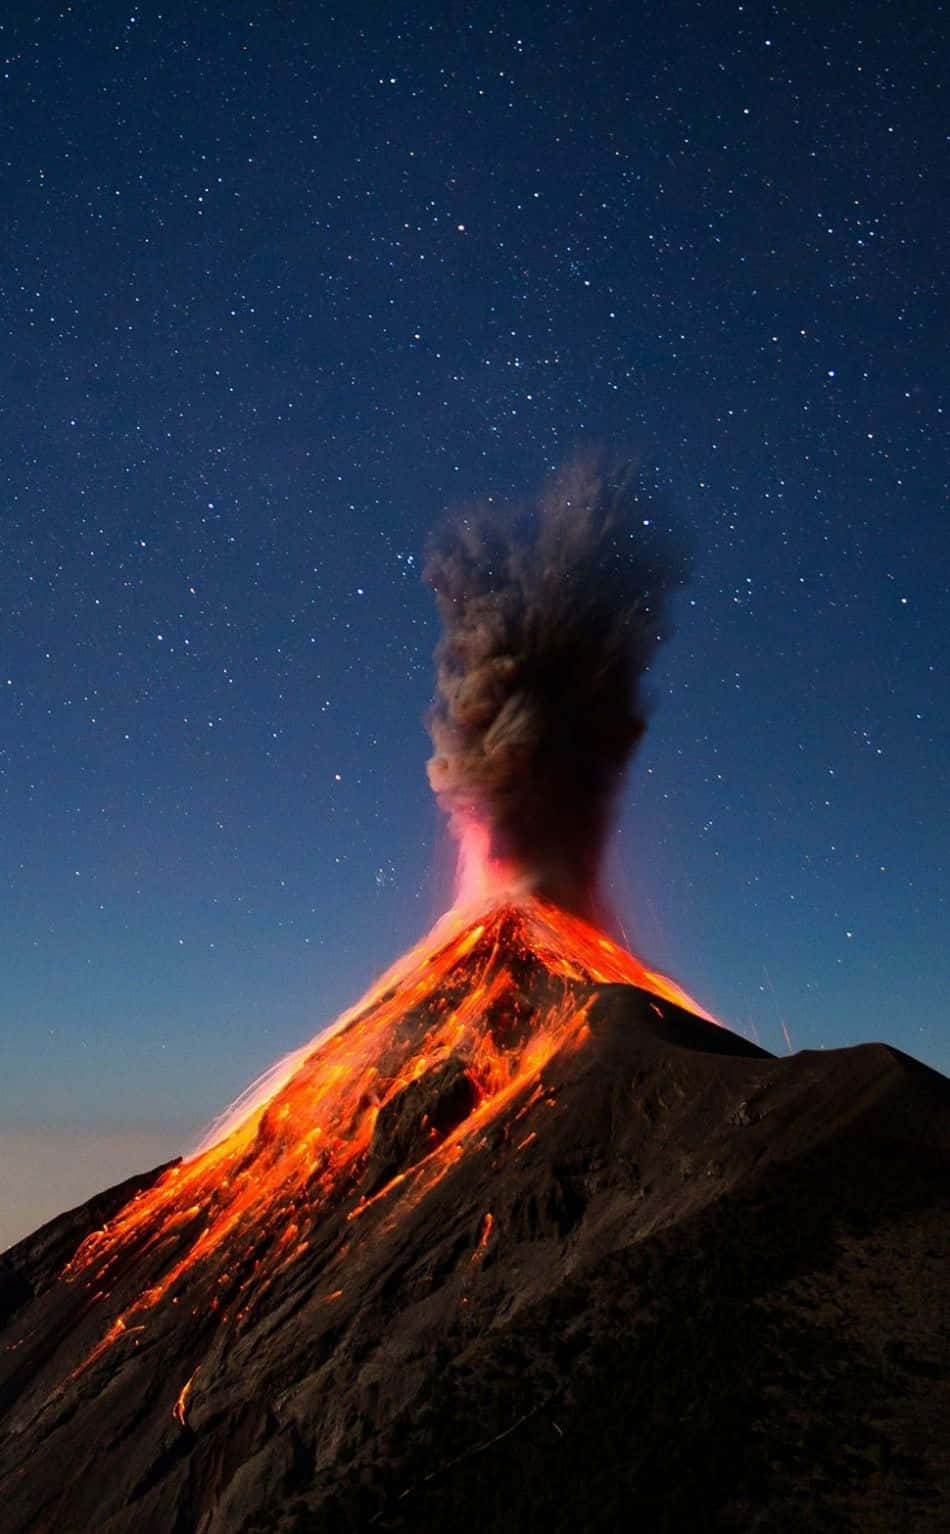 Magmatiskexplosion På Vulkanen Volcán De Fuego Som Dator- Eller Mobilbakgrund. Wallpaper